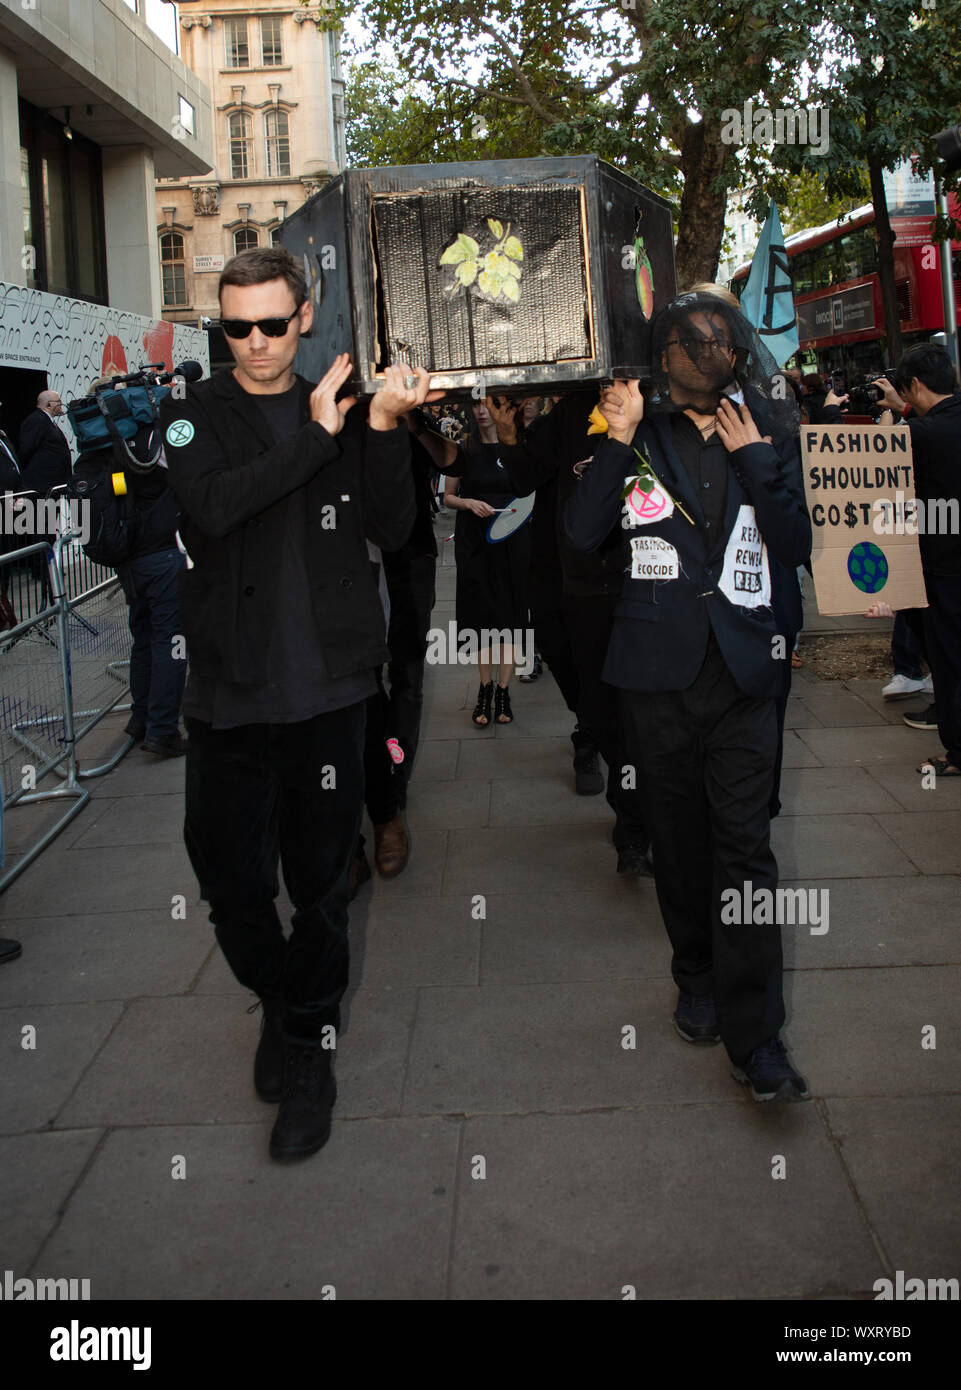 Londres, Royaume-Uni. 17 Septembre, 2019. Rébellion Extinction organisé une manifestation de protestation à la London Fashion Week, ici vu portant un cercueil et un conseil qui dit "la mode ne devrait pas co$t (le monde). Crédit : Joe Keurig / Alamy News Banque D'Images